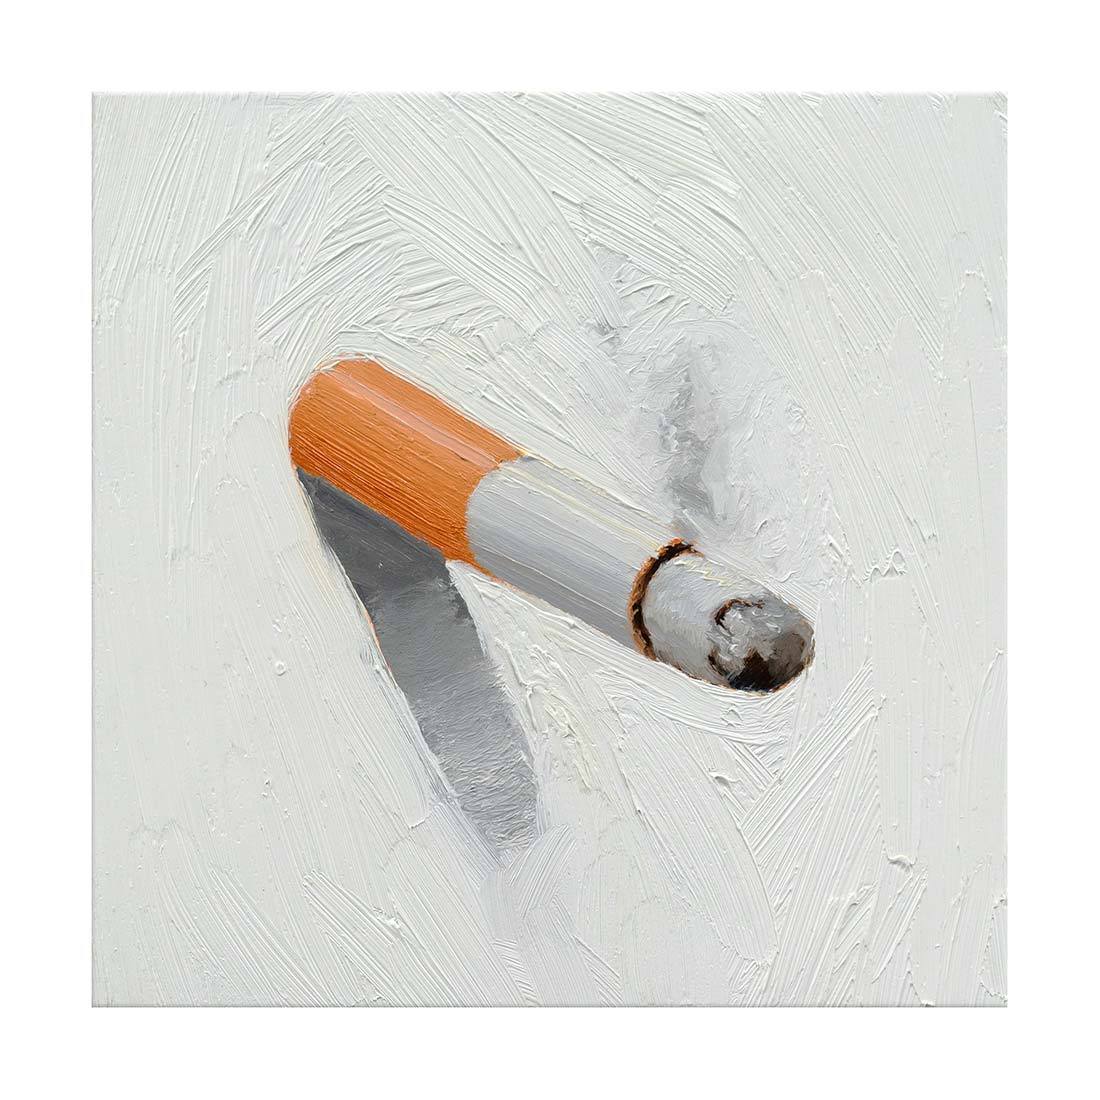 Cigarette Study No. 4